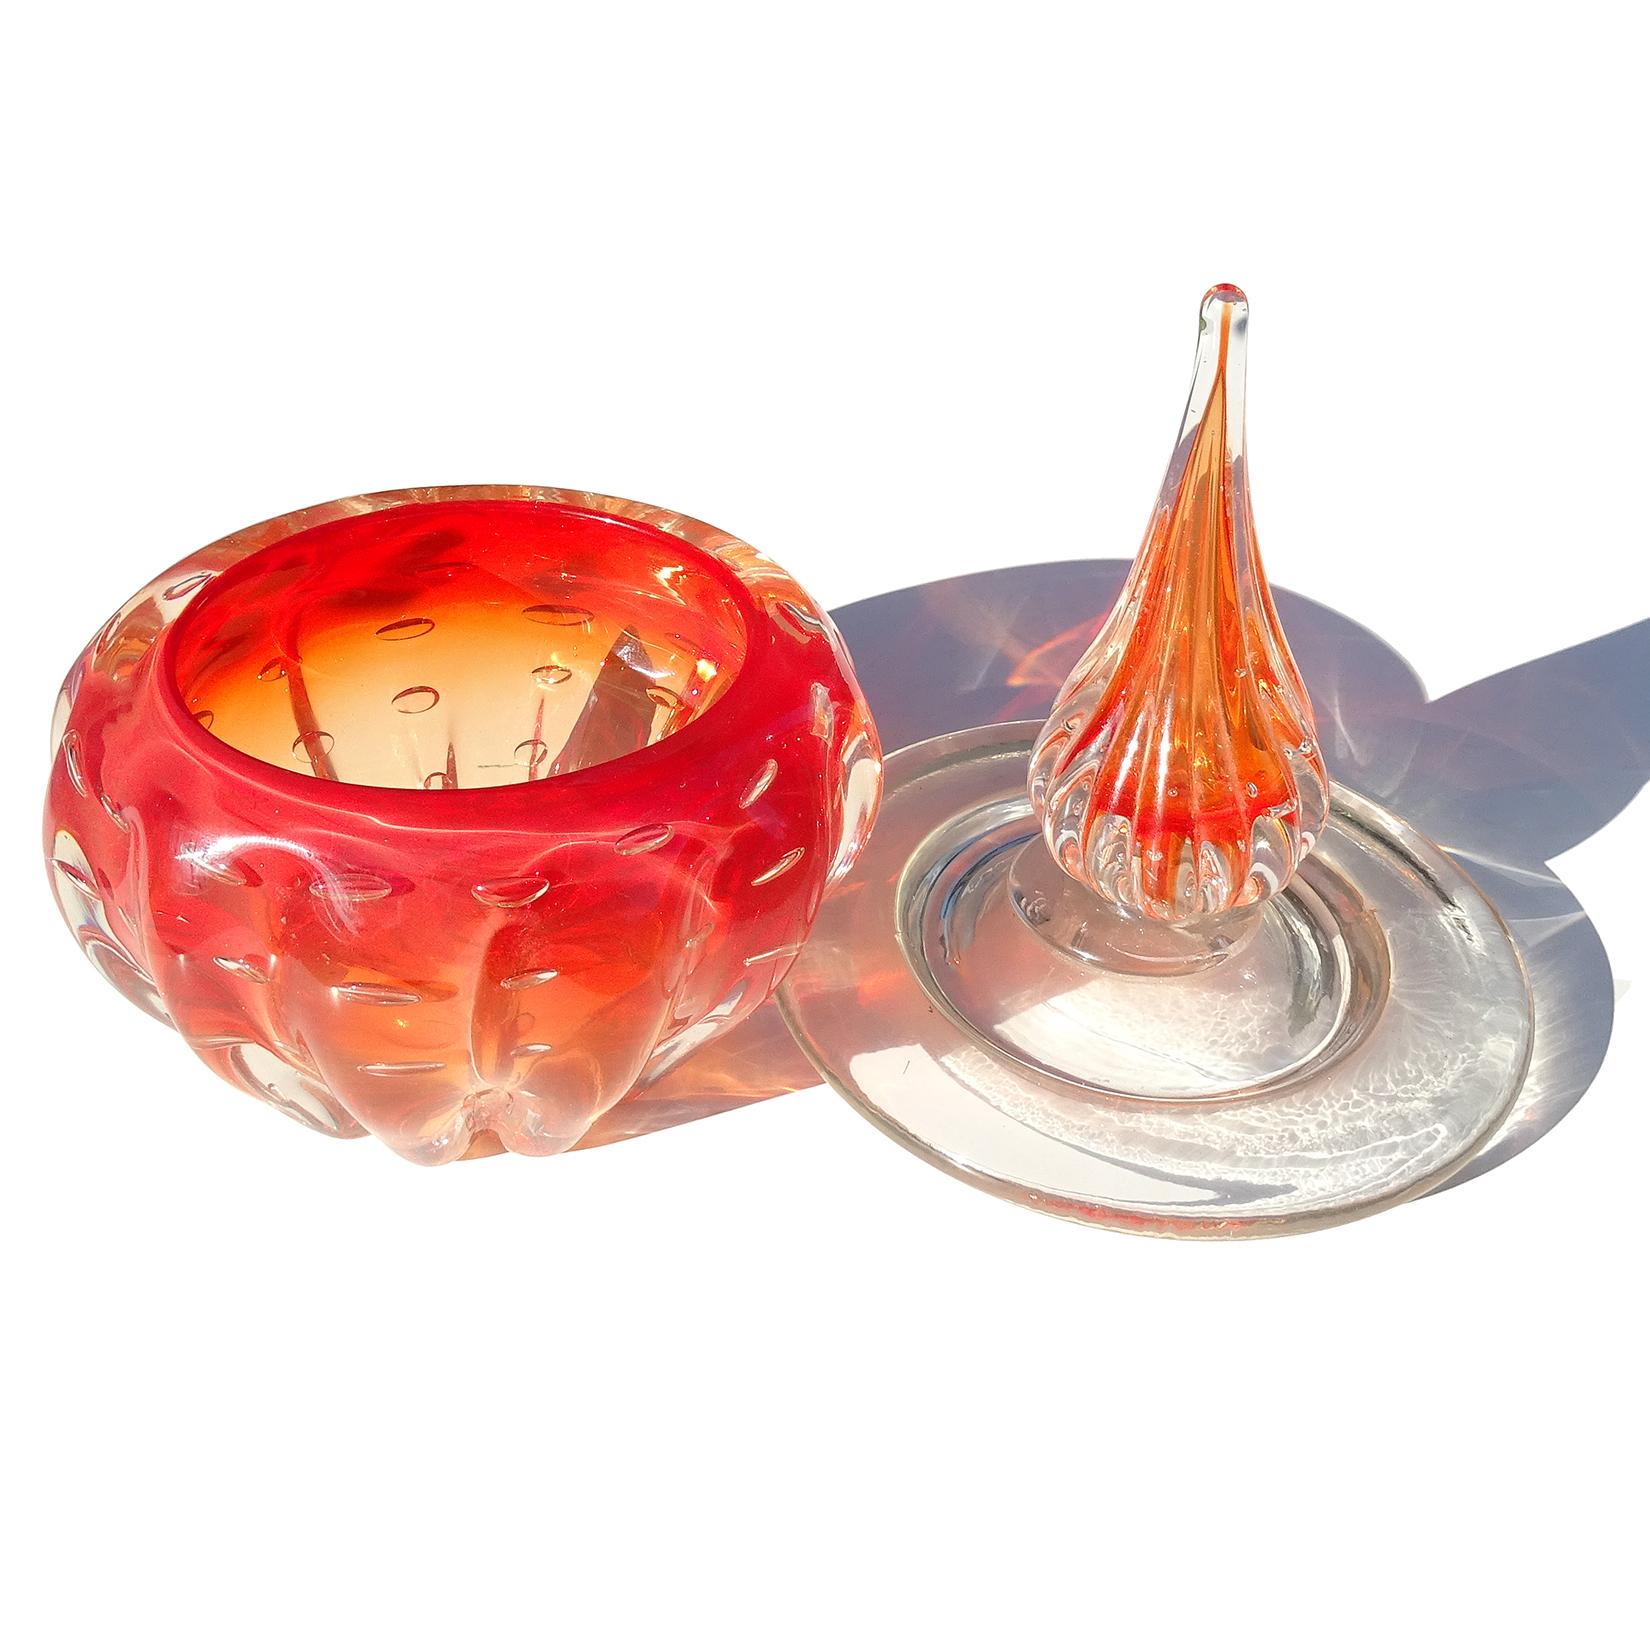 Vintage Murano soufflé à la main Sommerso rouge orange et bulles verre d'art italien couvercle vanity dresser jar. La pièce a un corps nervuré, avec un grand couvercle transparent et une pointe. Fabriqué selon la technique 